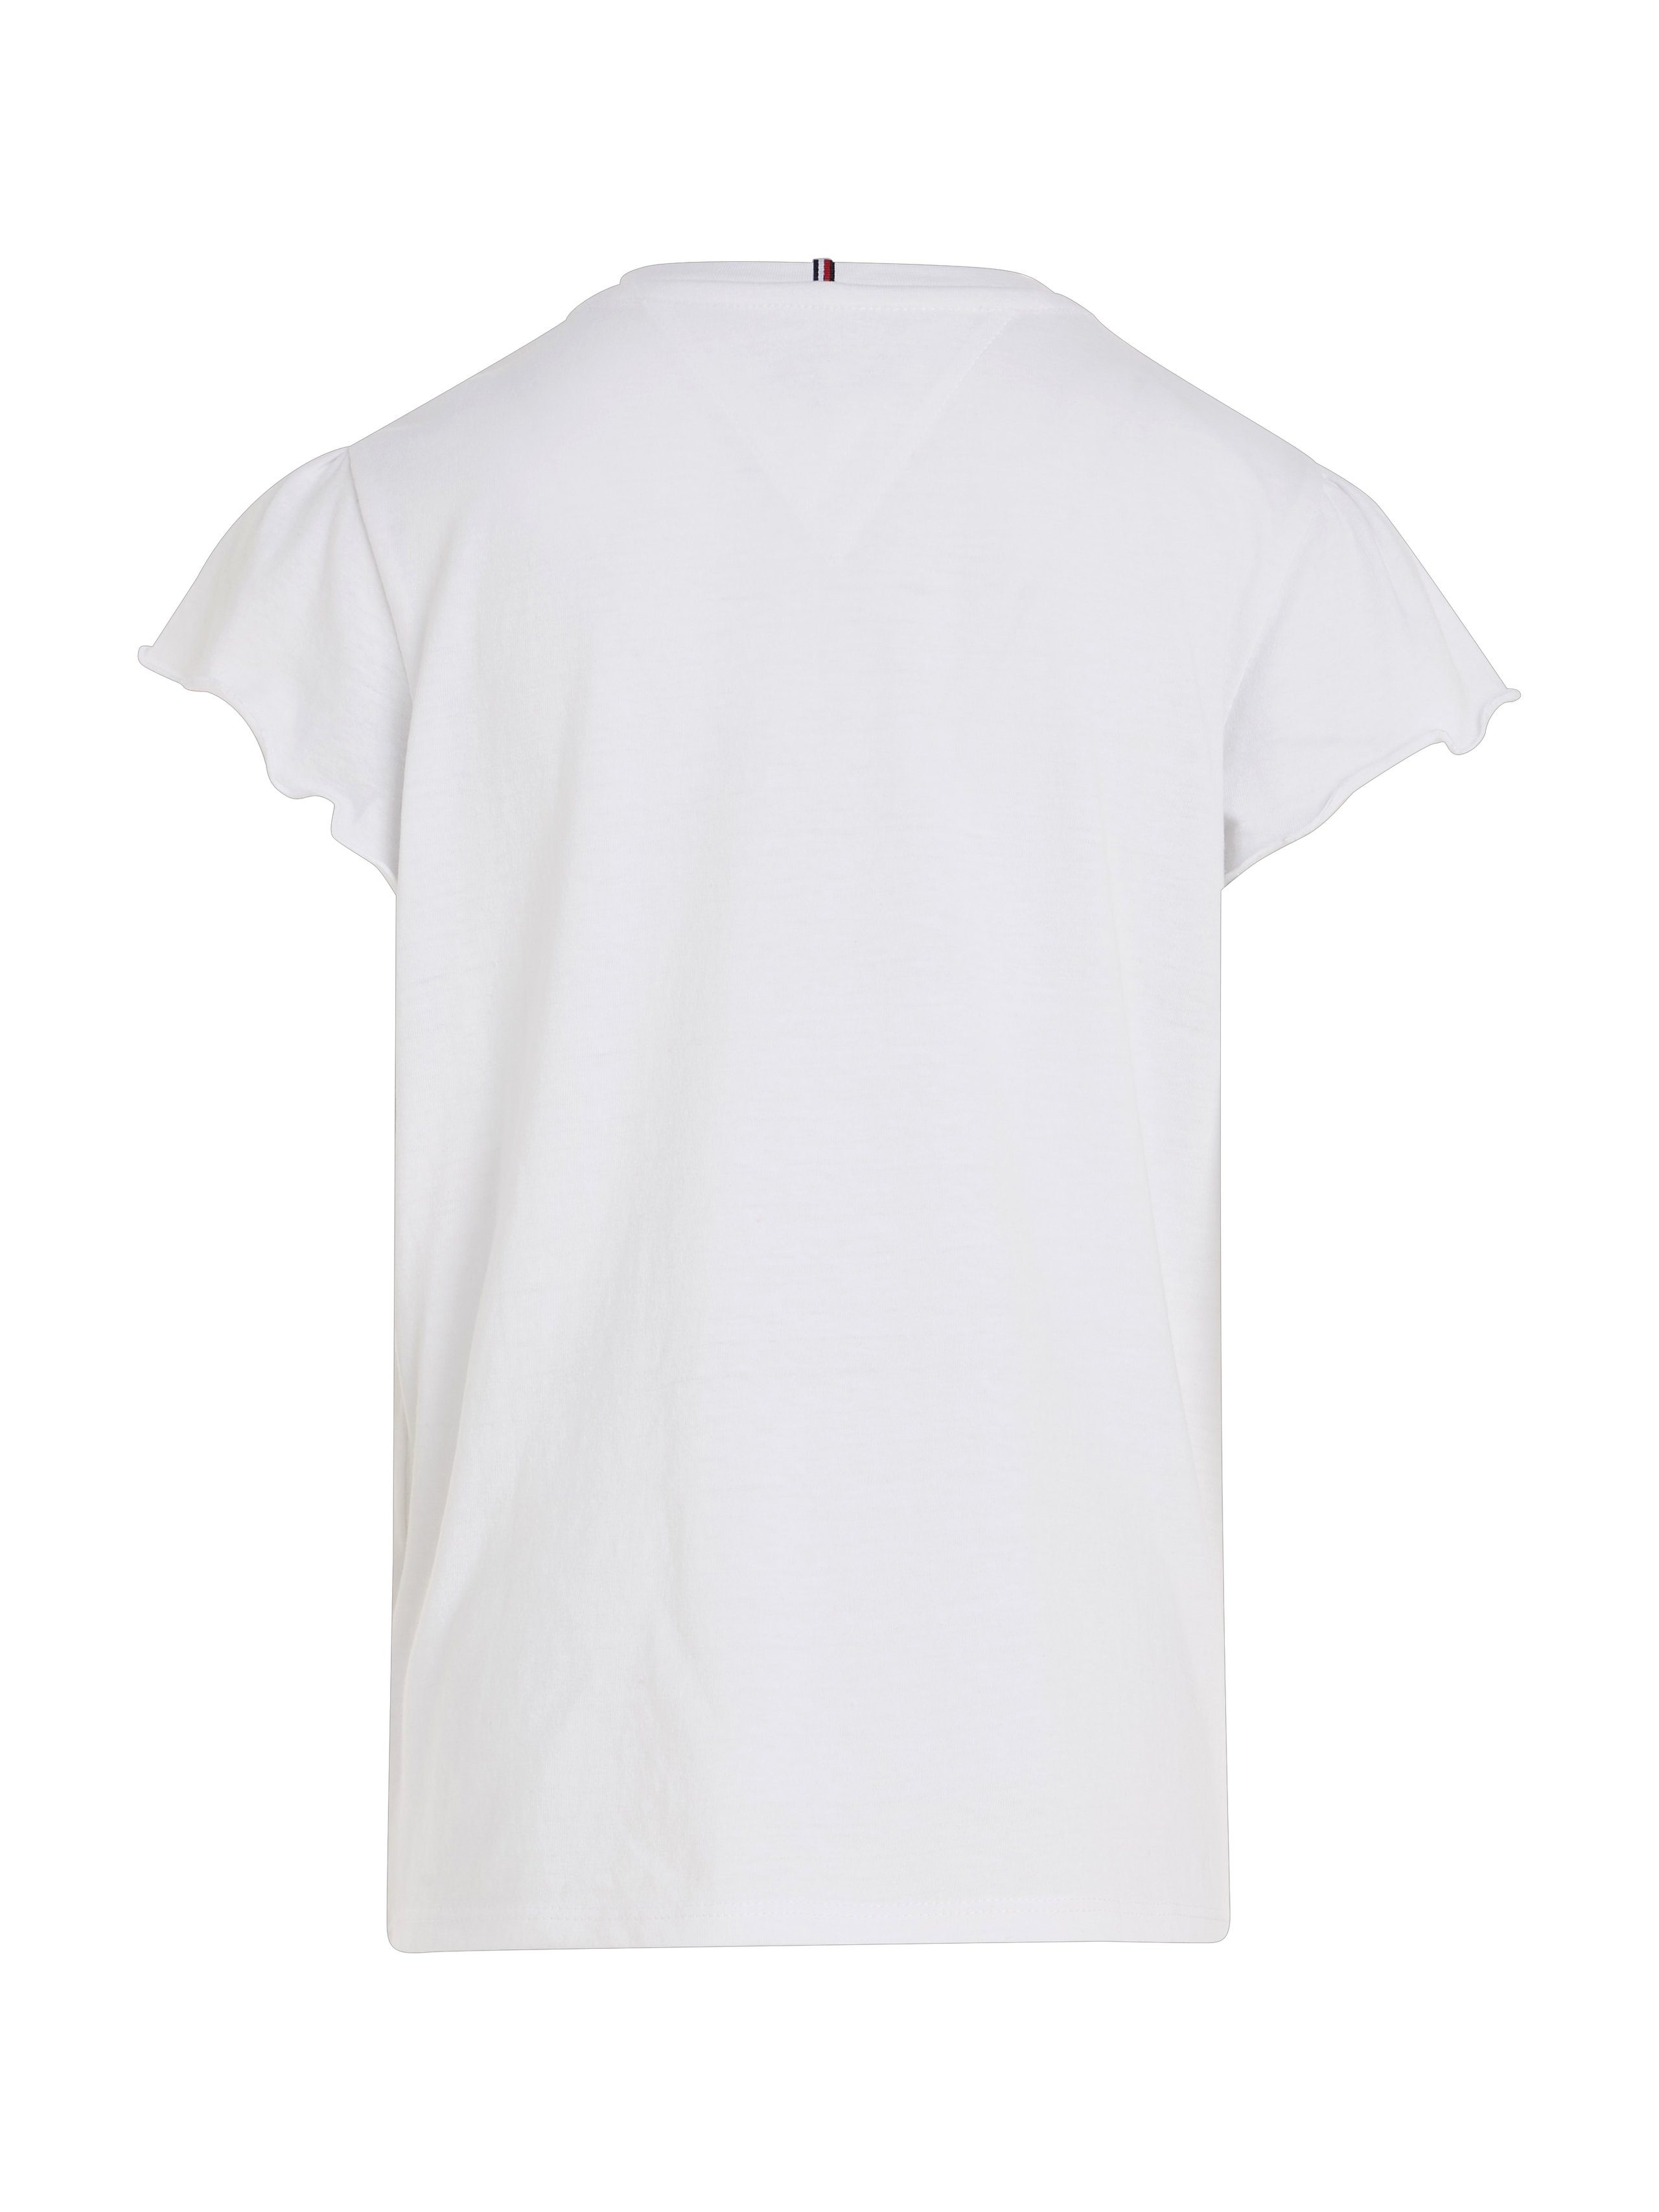 ESSENTIAL TOP T-Shirt white für RUFFLE Hilfiger SLEEVE Tommy Babys